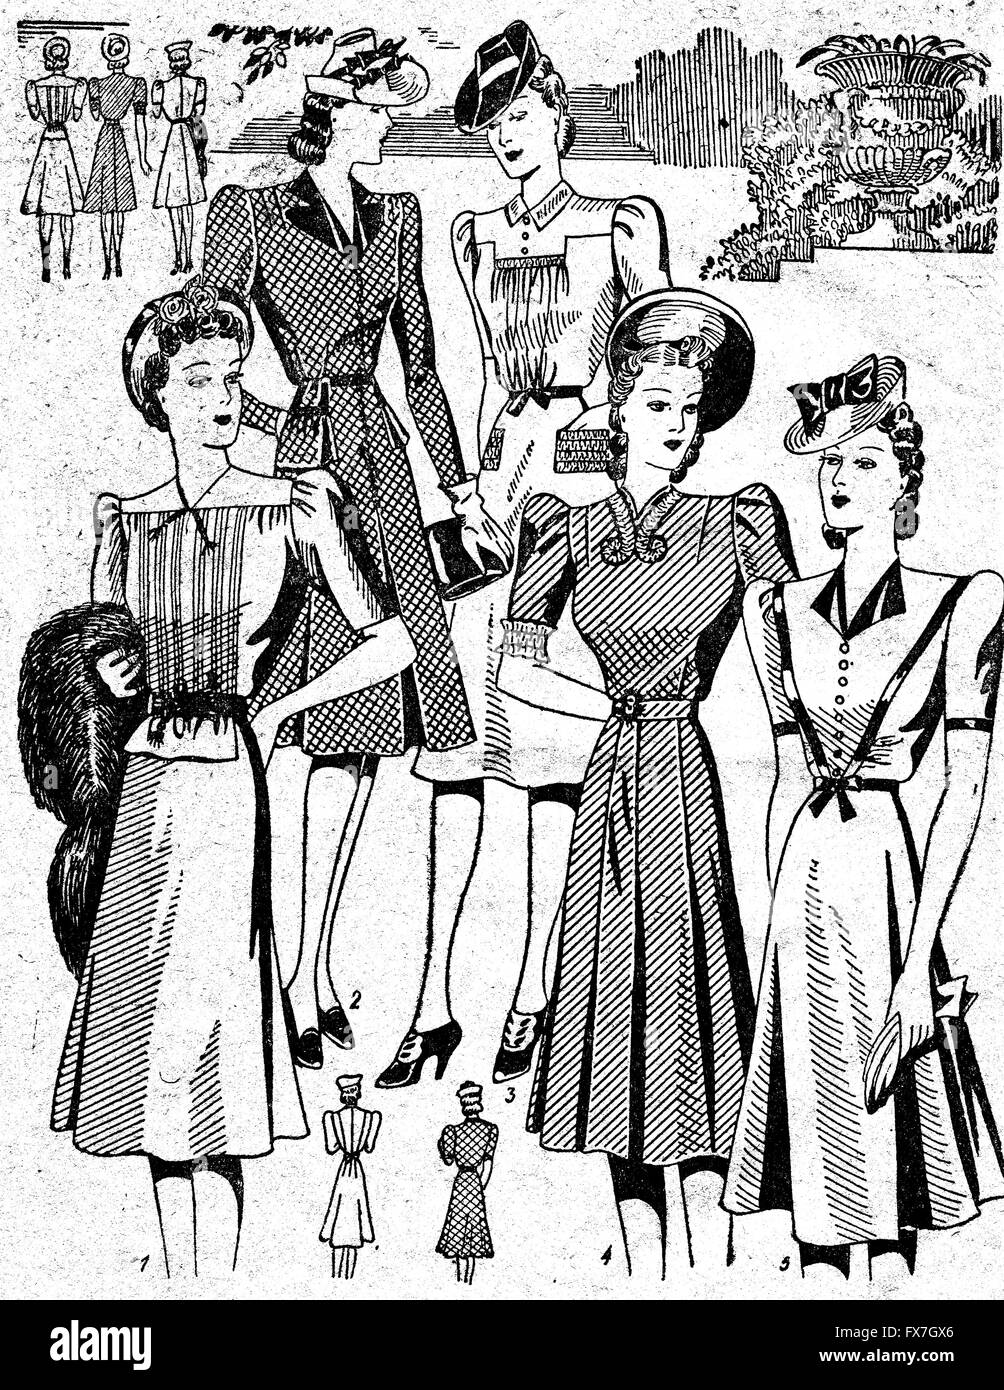 Artistes Ivanov, Muhar, Fomine, Schifrin, et Epstein - une illustration de la brochure 'Modèles de la saison." Volume 1, publié Gizlegprom, Moscou, URSS, 1941 Banque D'Images